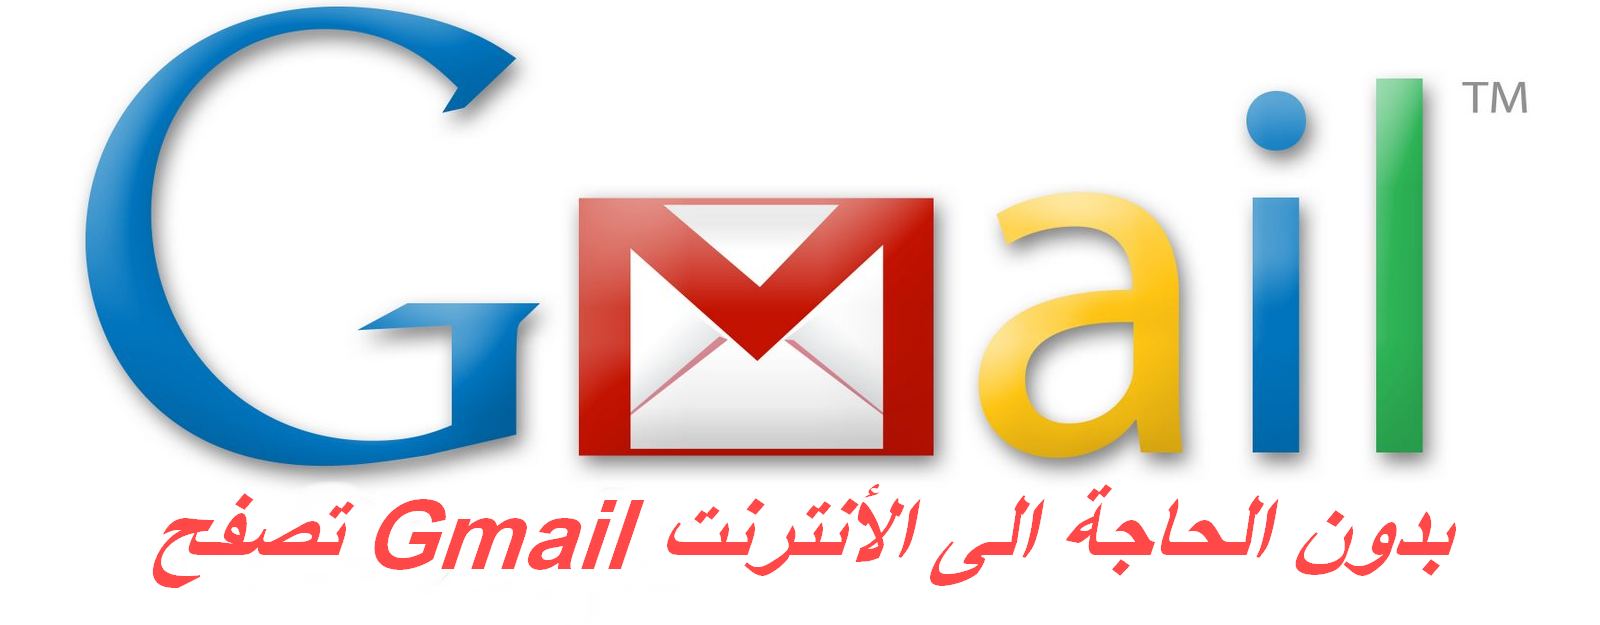 الان يمكنكم تصفح Gmail بدون الحاجة الى الأنترنت 